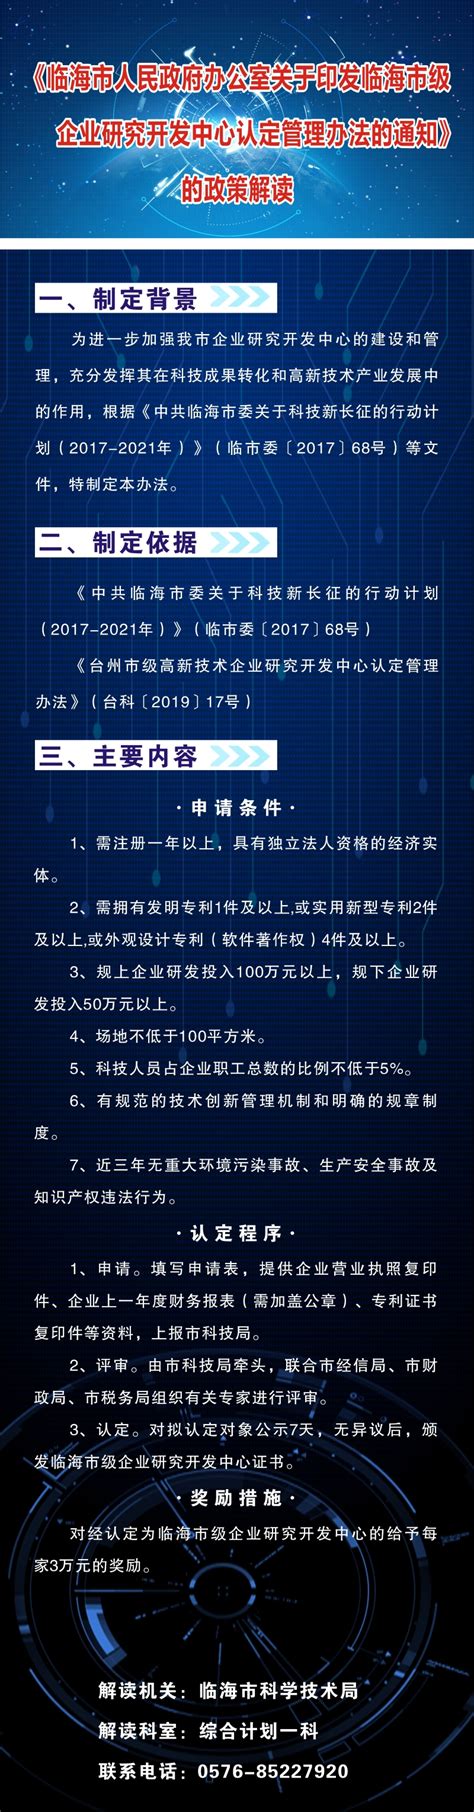 杭州市企业高新技术研究开发中心管理办法 - 知乎